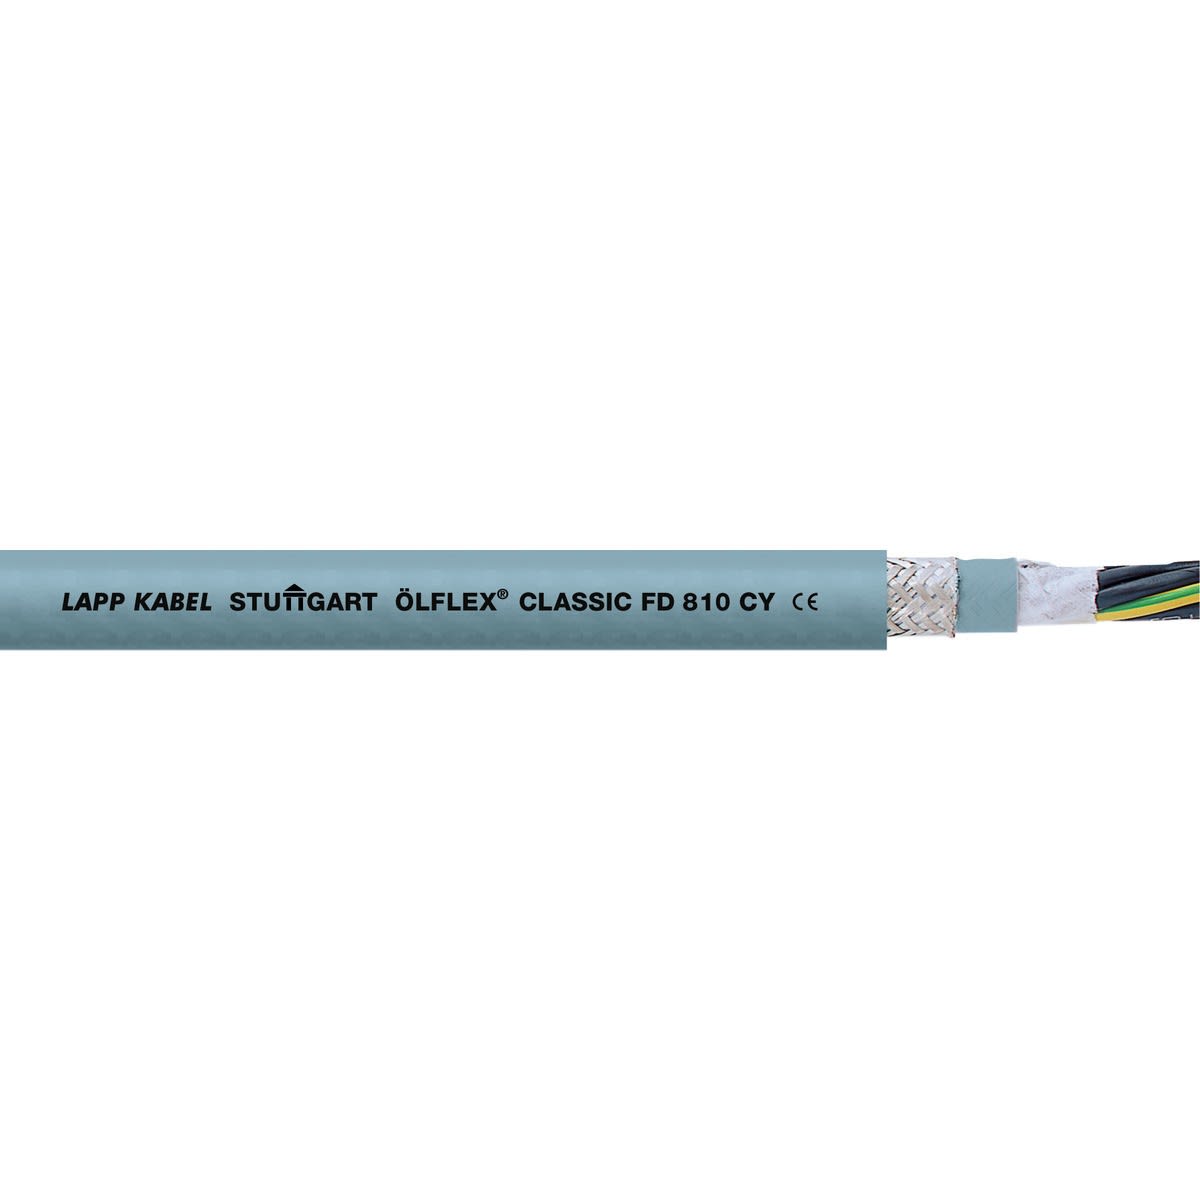 Lapp - ÖLFLEX CLASSIC FD 810 CY 5G0,75